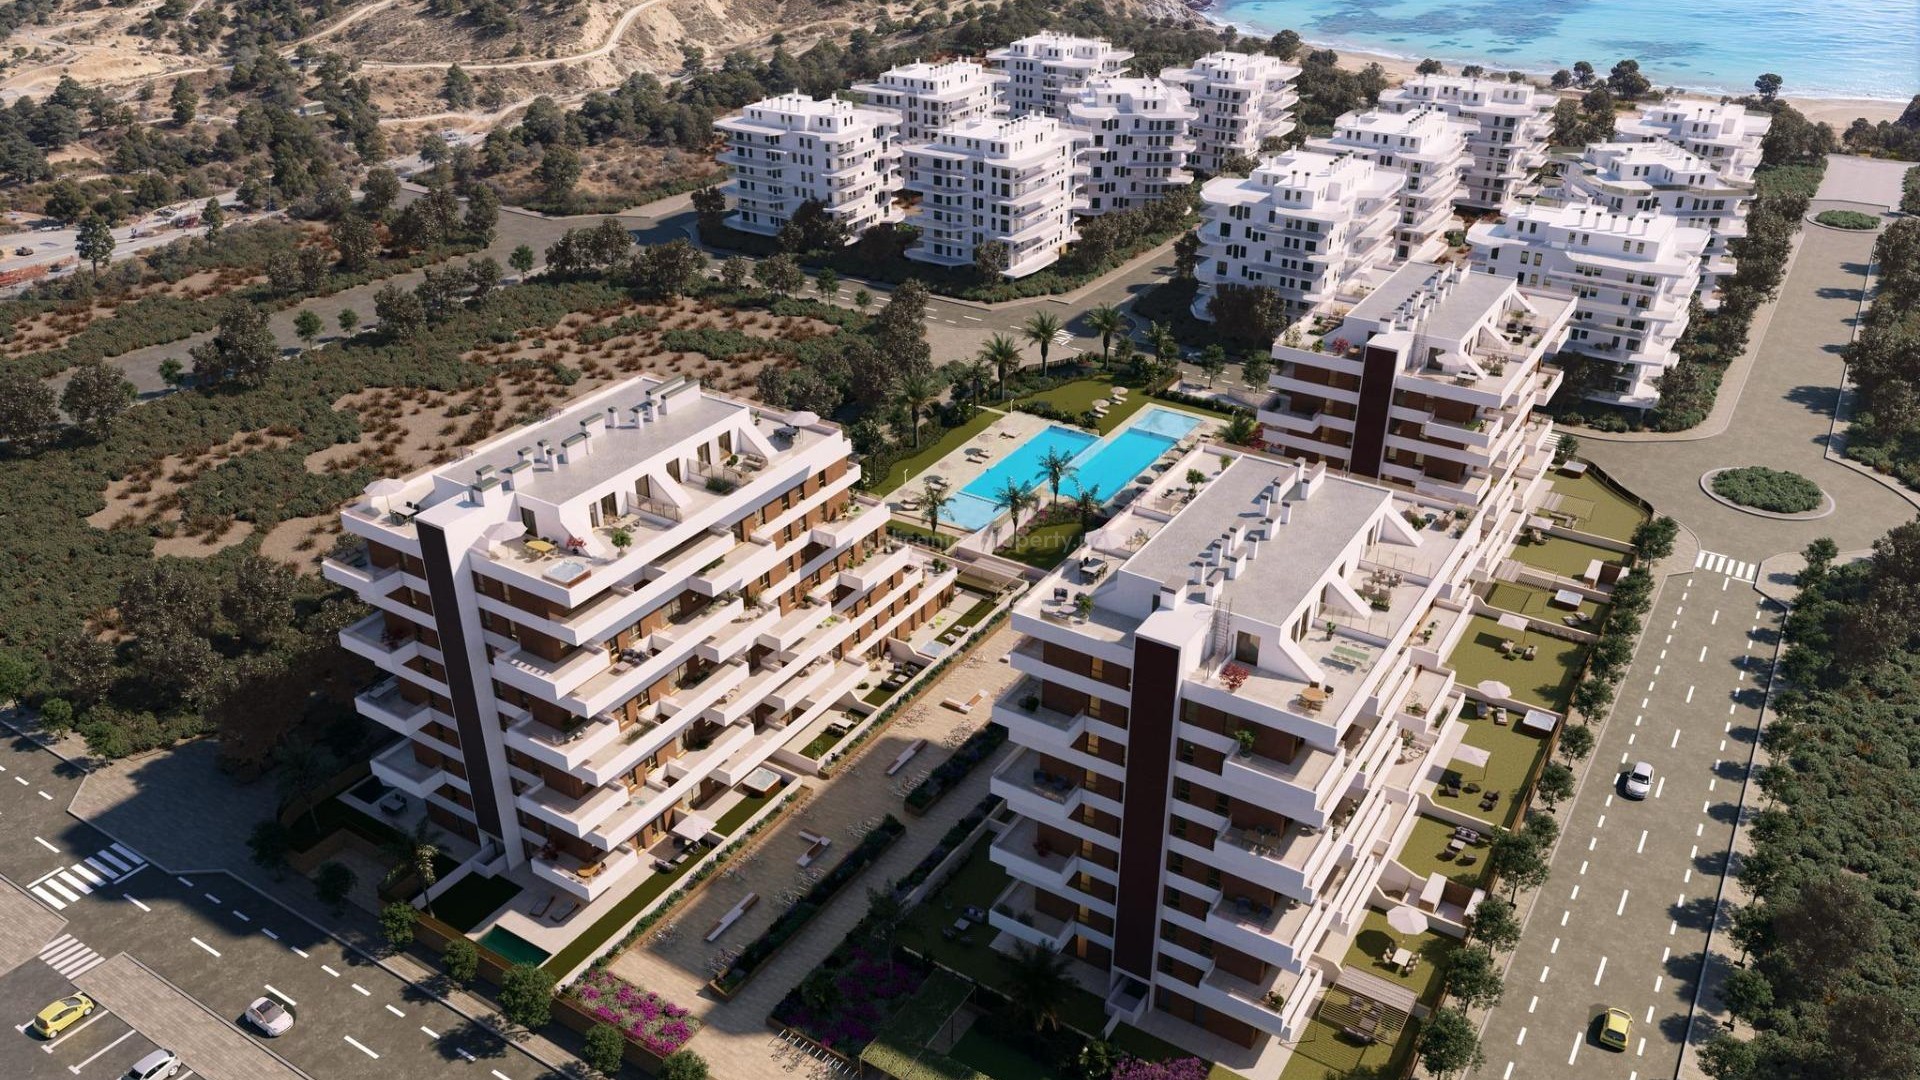 Nye leiligheter i Villajoyosa bare 450 meter fra strand, 2/3 soverom, 2 bad, svømmebasseng, treningsstudio, stor terrasse. 1 etasje med privat hage.